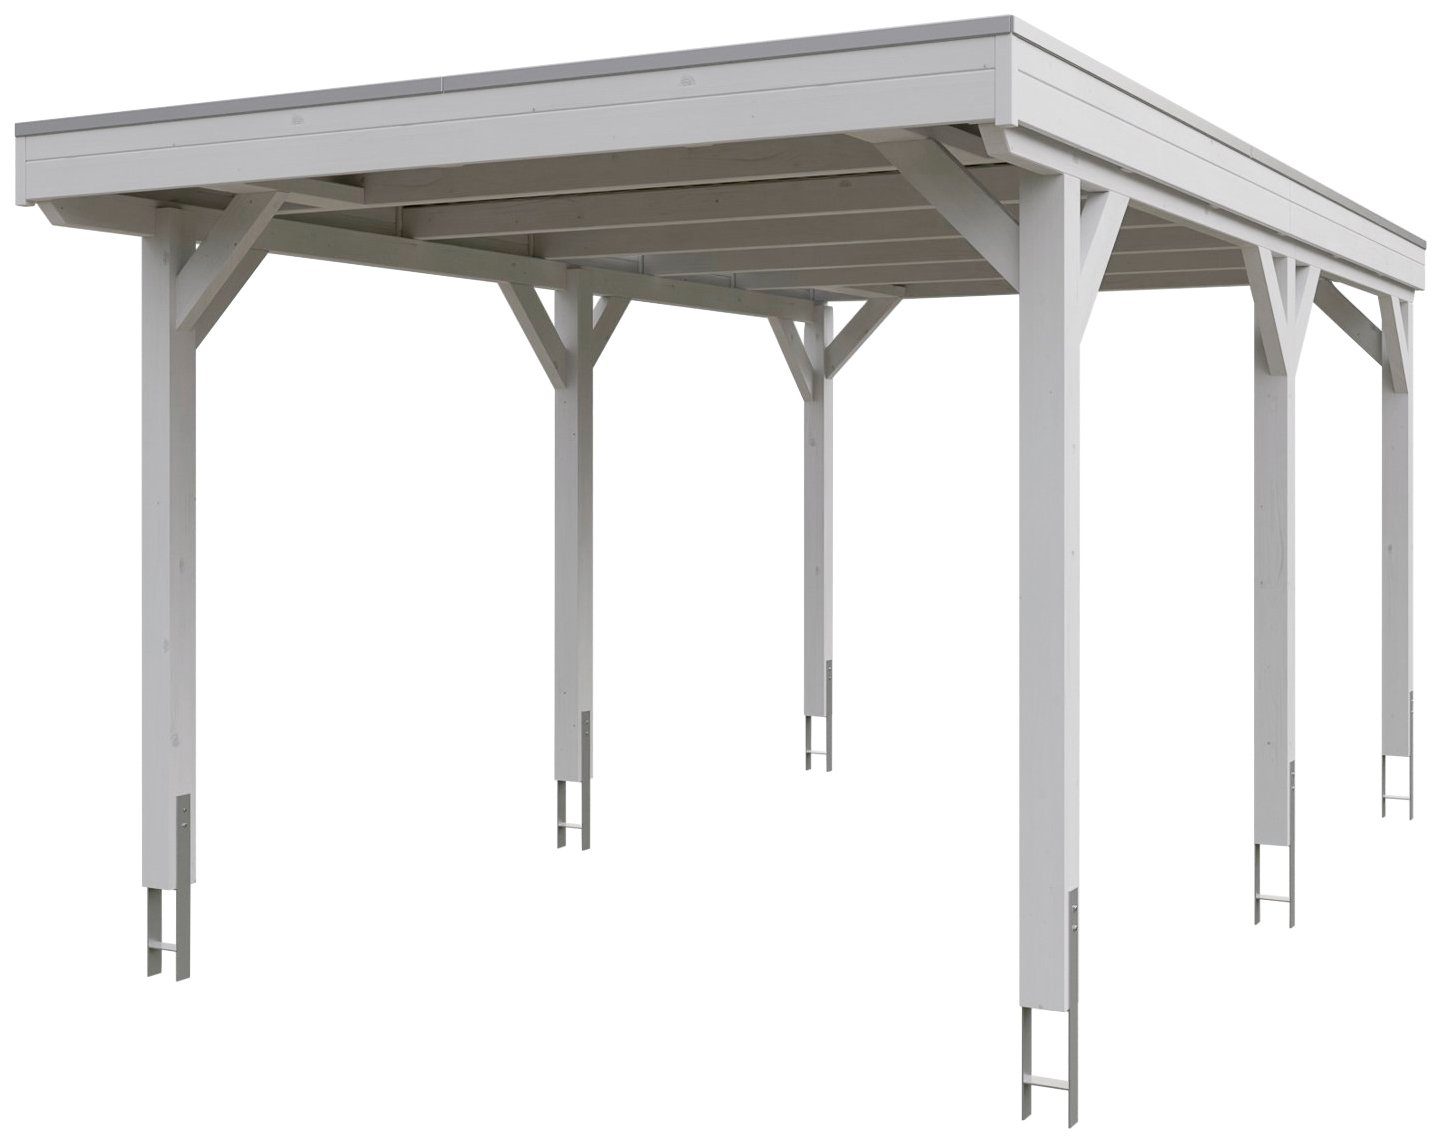 Skanholz Einzelcarport Grunewald, BxT: 321x554 cm, 289 cm Einfahrtshöhe,  mit Aluminiumdach, Flachdach mit Aluminium-Dachplatten, farblich behandelt  in weiß